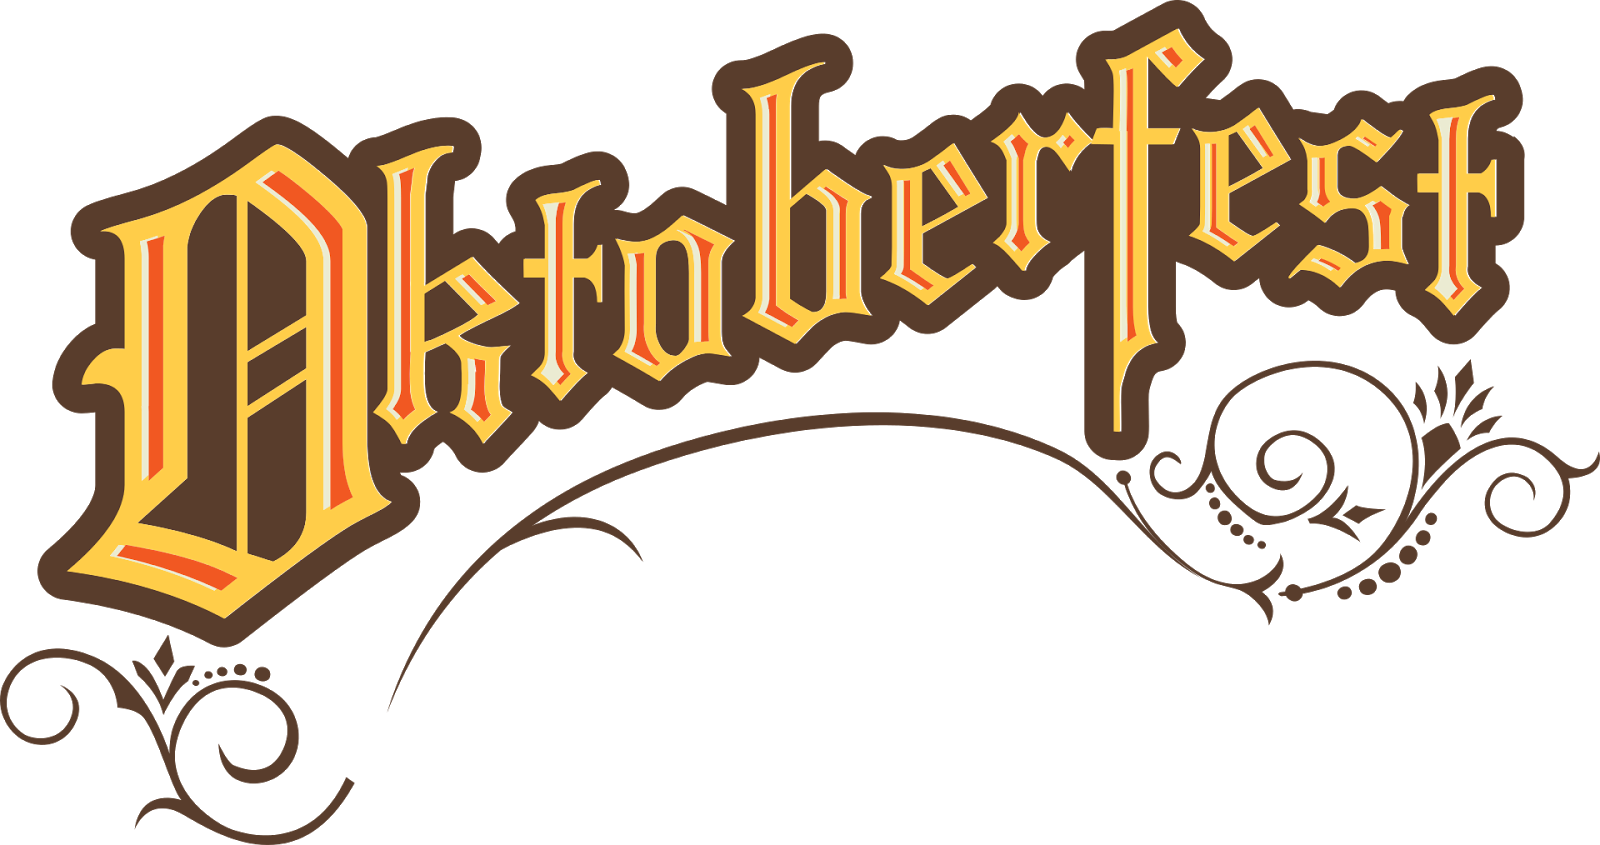 Logo Oktoberfest